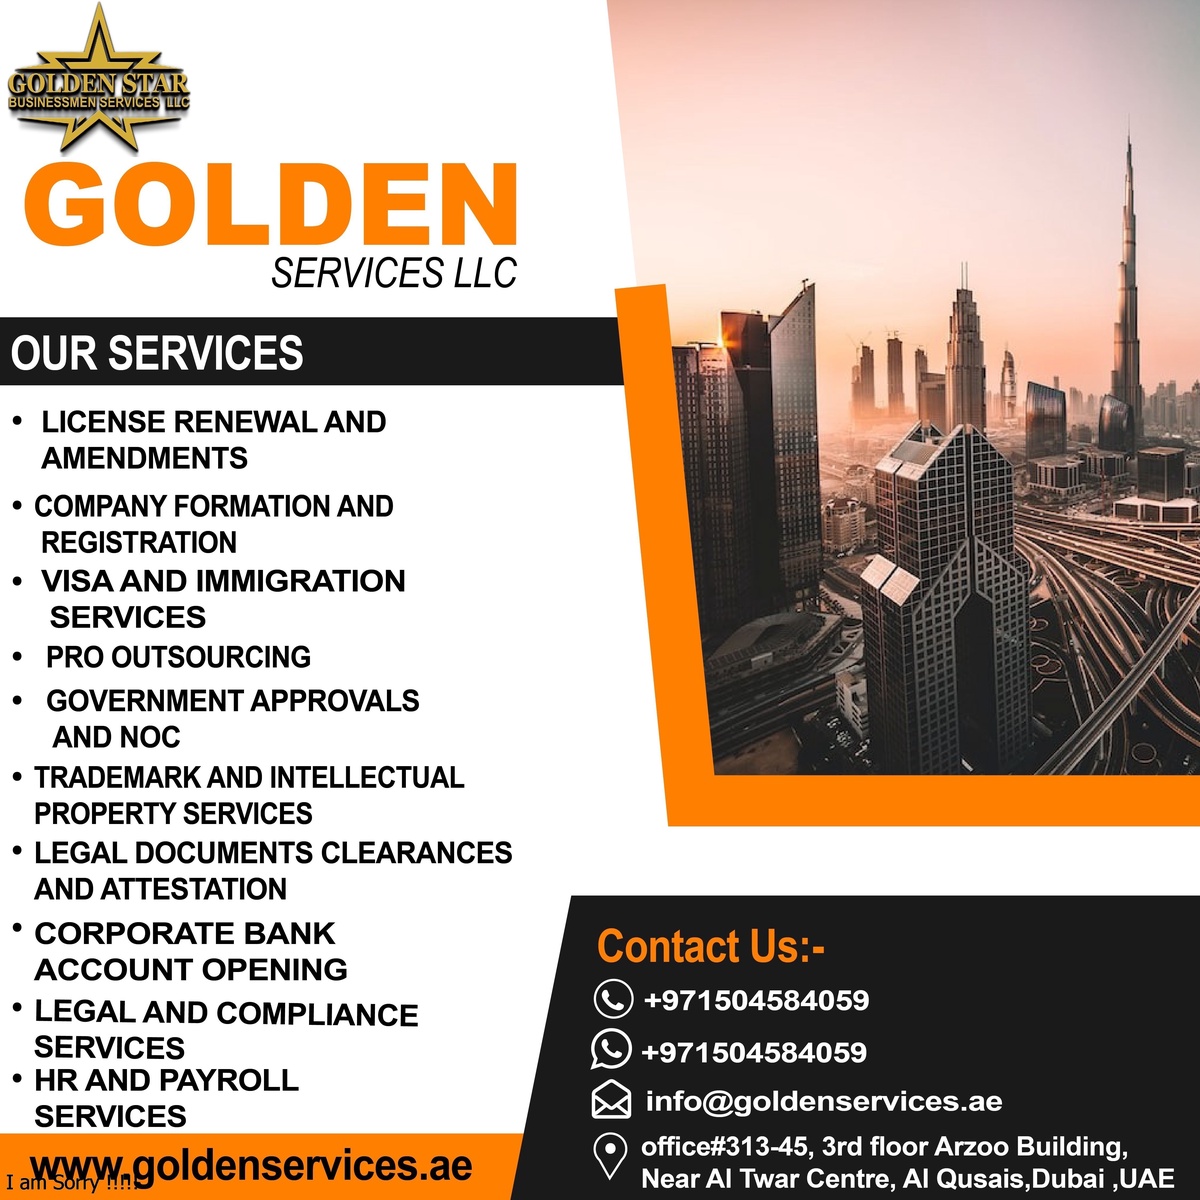 Starting a Business in Dubai through Golden Star LLC +971504584059